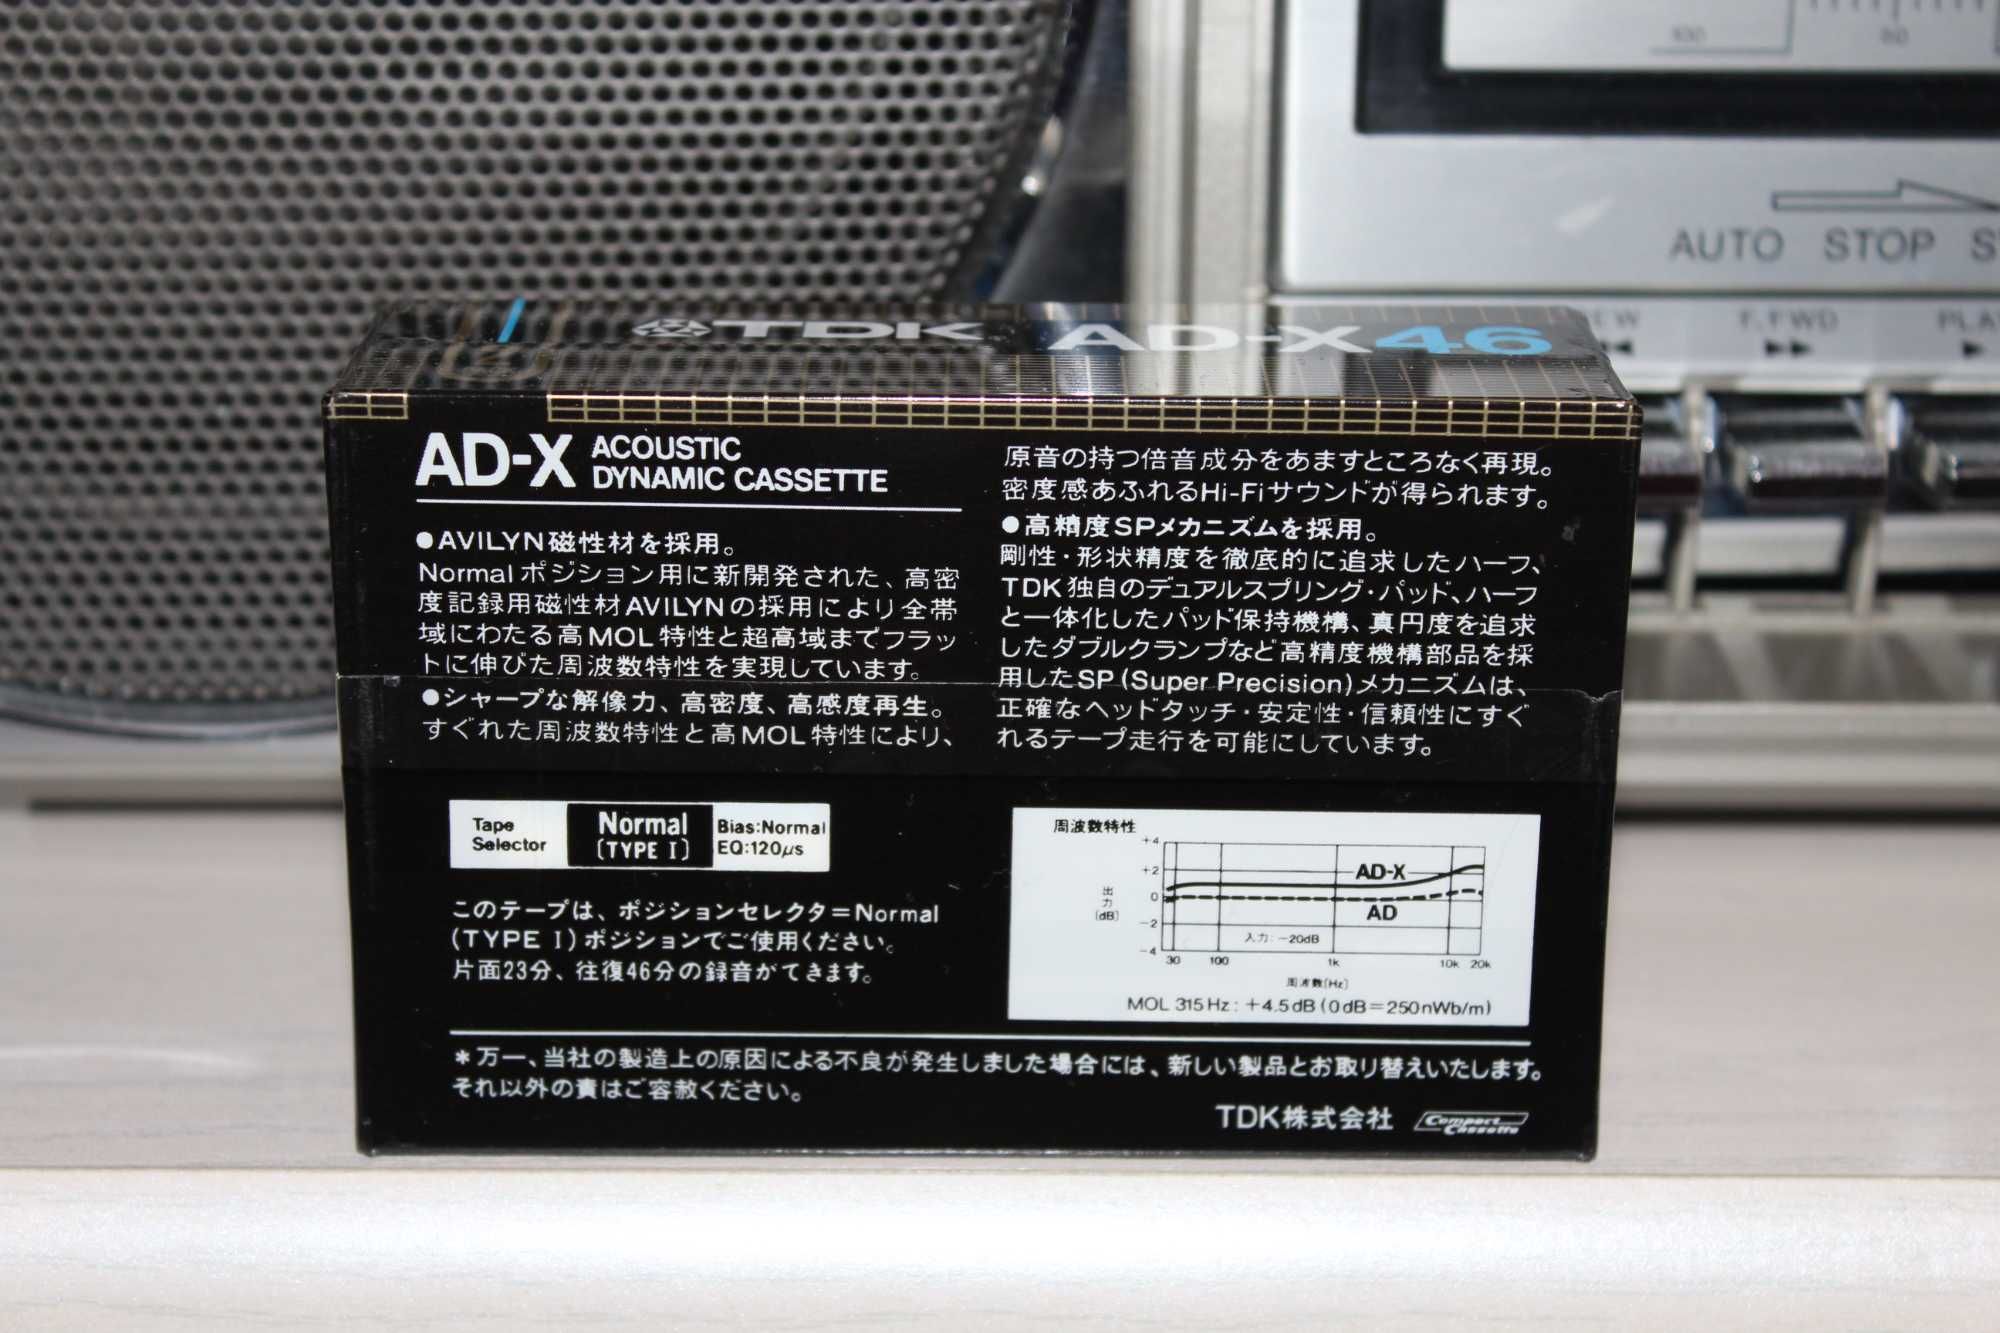 Редкая коллекционная аудиокассета TDK AD-X46 Made in Japan (ИДЕАЛ)1982